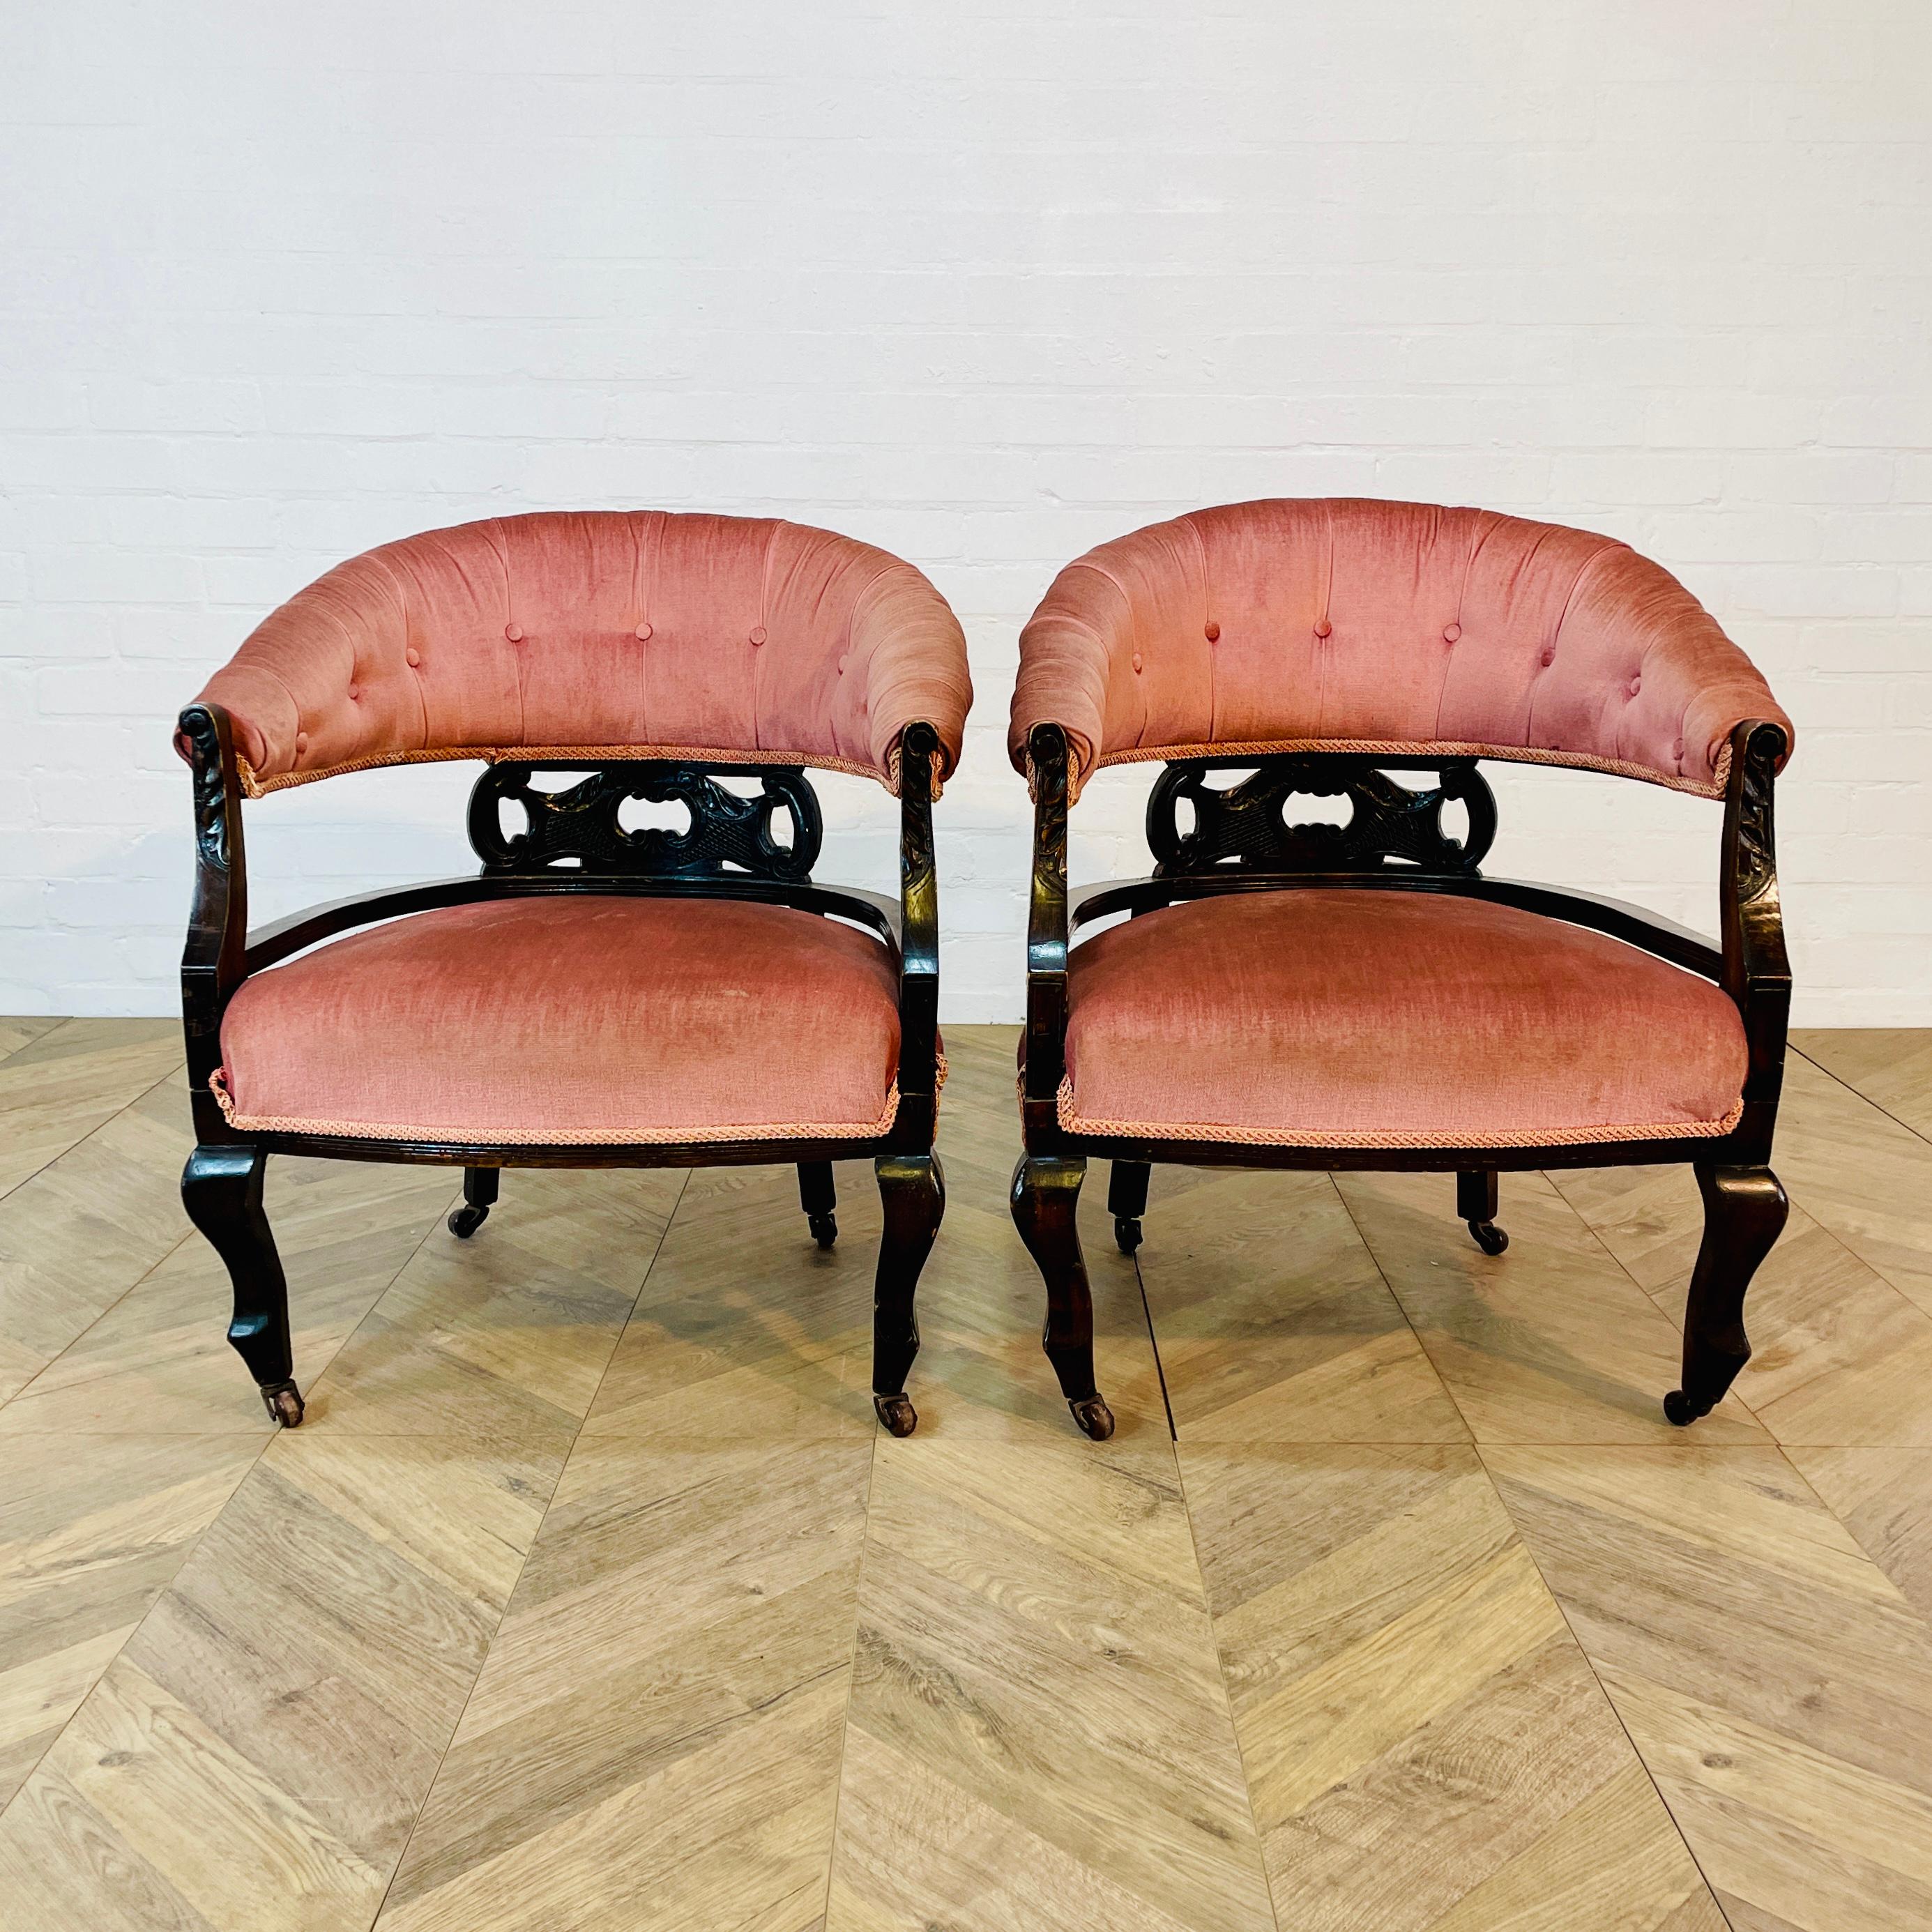 Paire de fauteuils bas bien proportionnés, vers 1900.

Les fauteuils sont dotés d'un joli dossier incurvé avec un travail détaillé et reposent sur des roulettes.

La tapisserie rose est en bon état ancien, sans éraflures ni marques visibles (comme